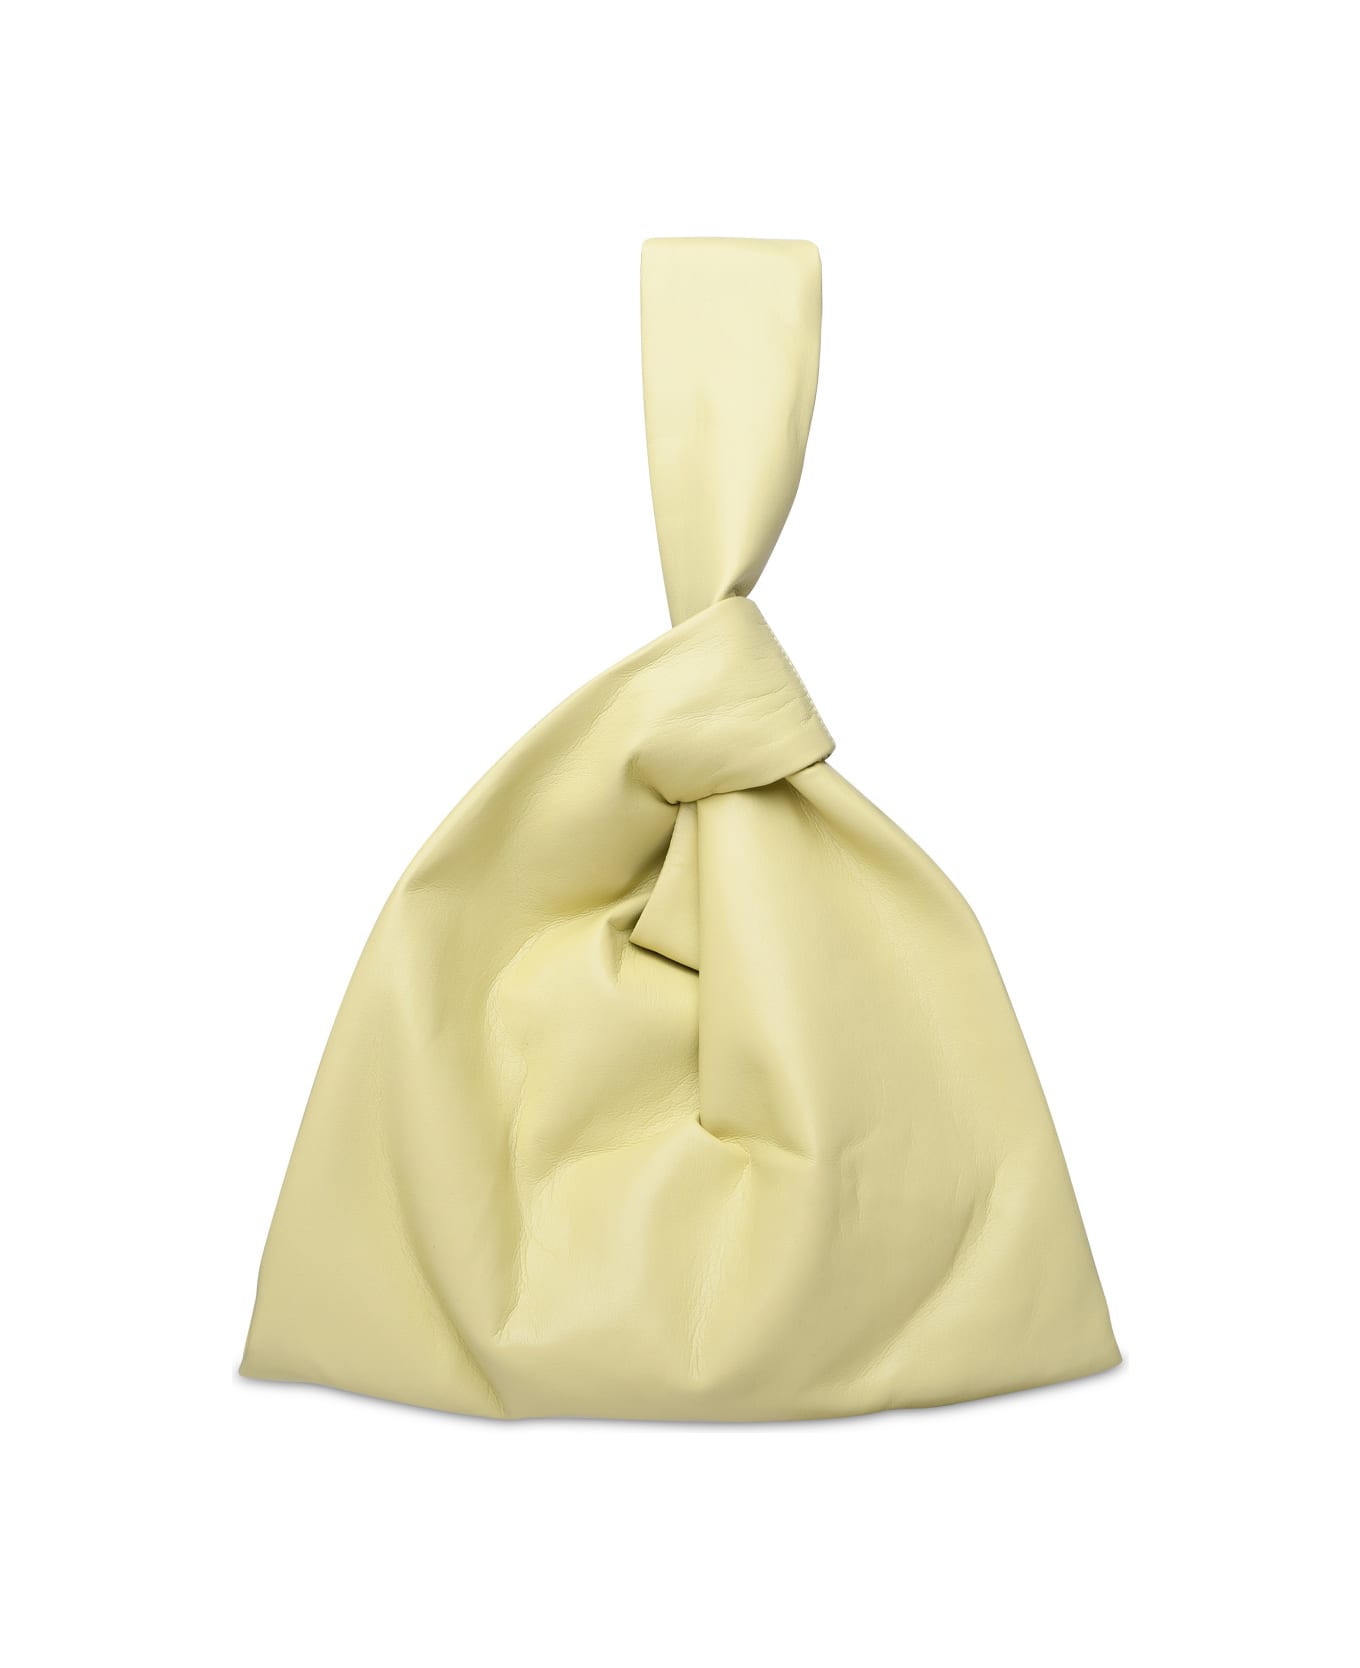 Nanushka 'jen' Lime Vegan Leather Bag - Yellow